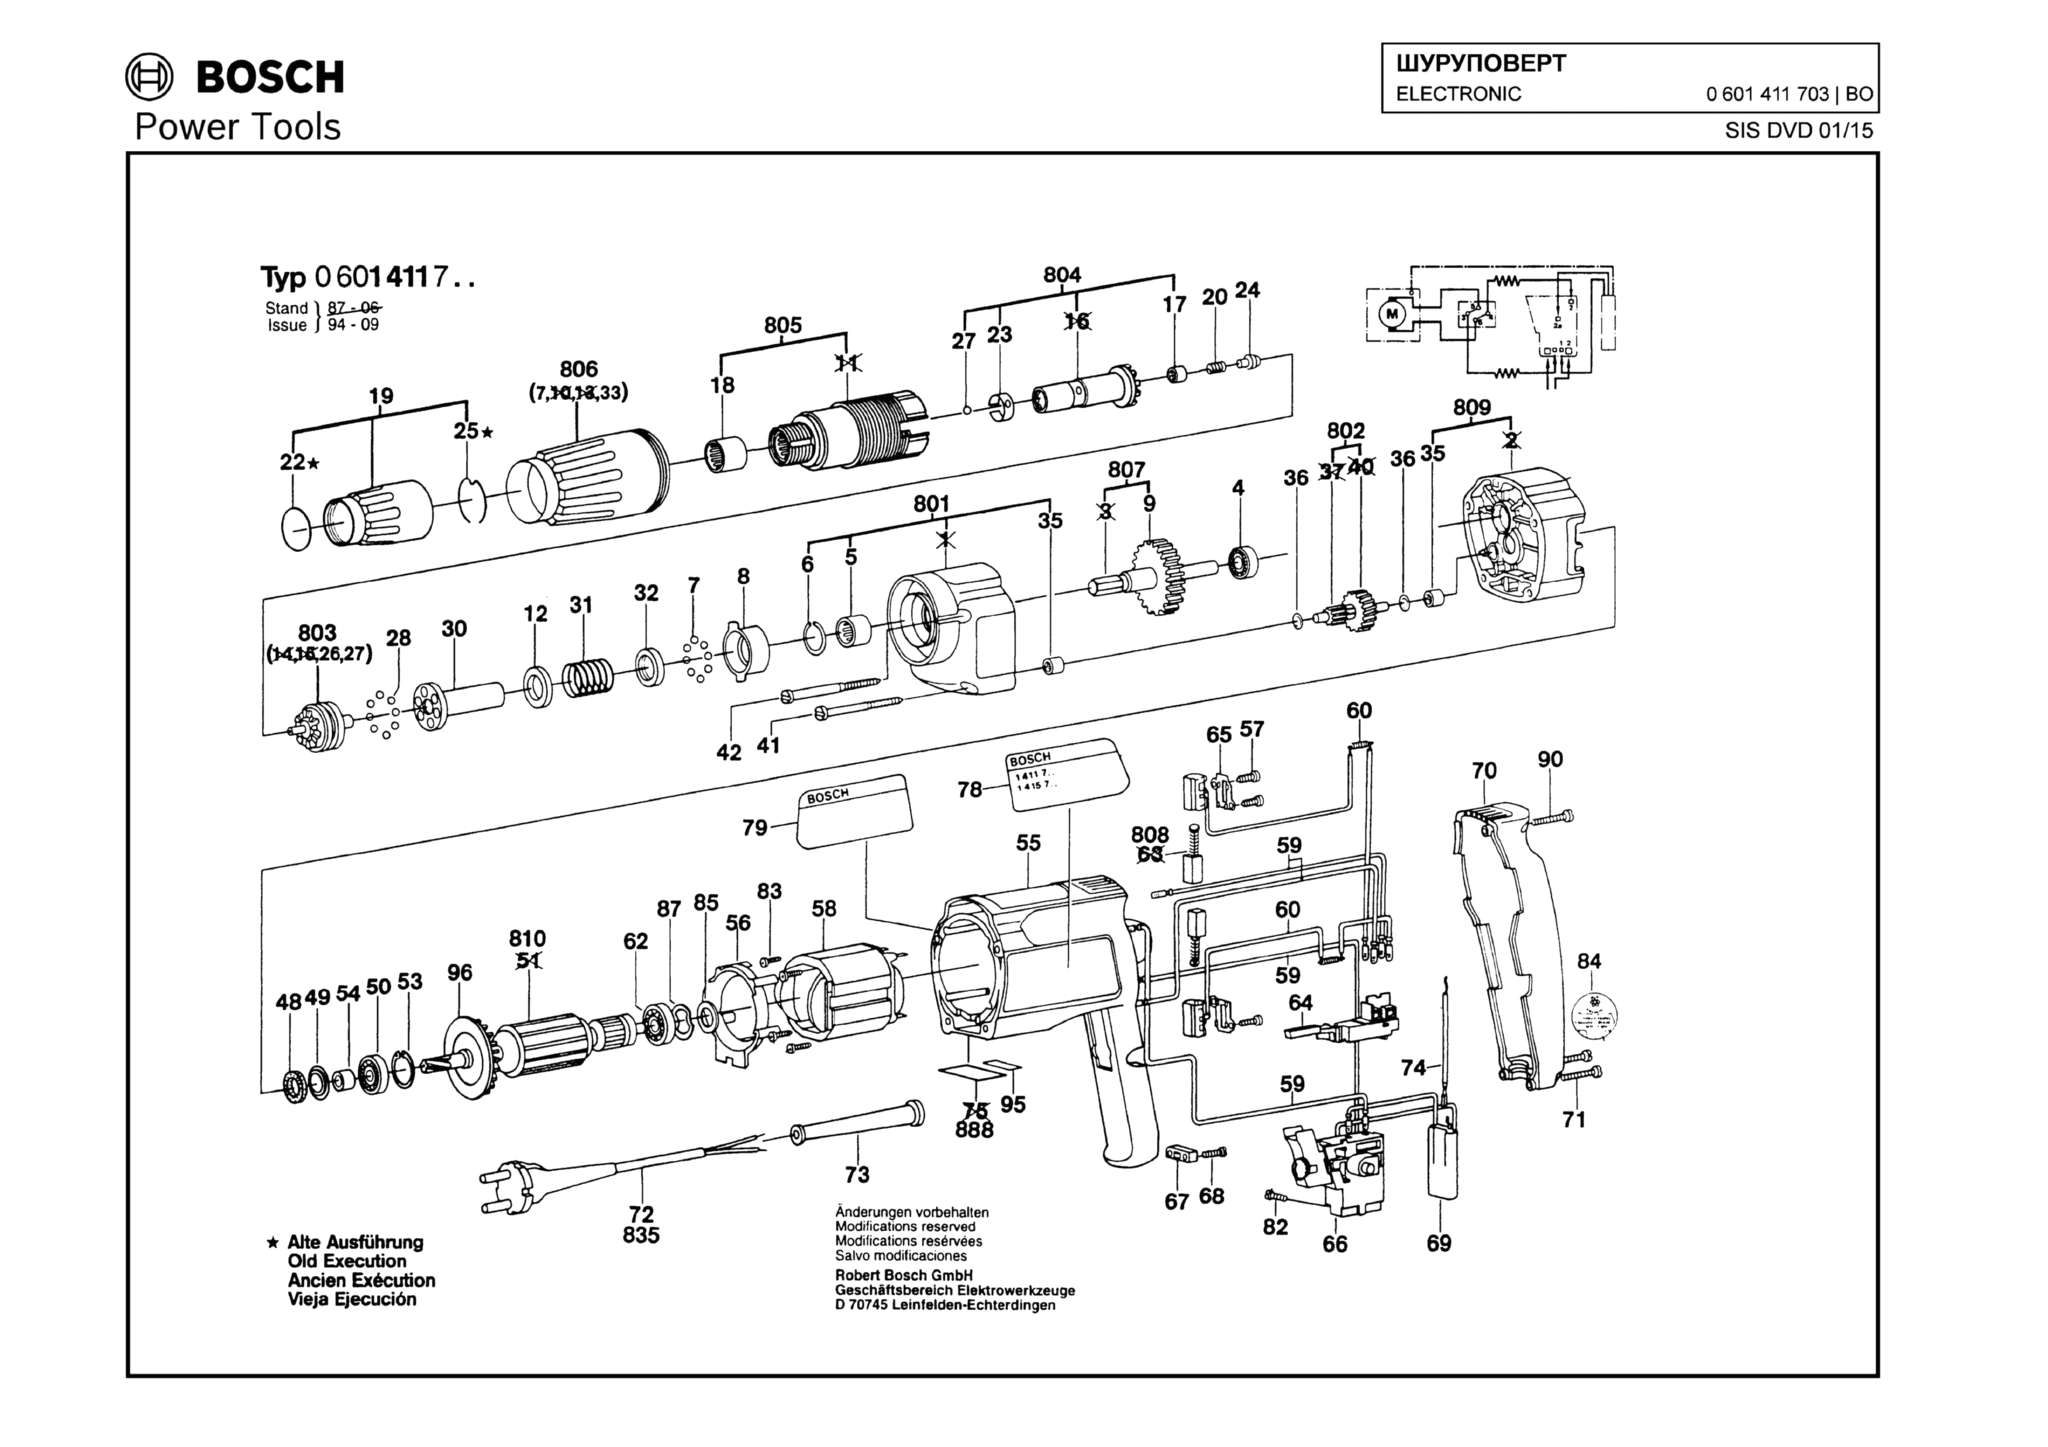 Запчасти, схема и деталировка Bosch ELECTRONIC (ТИП 0601411703)